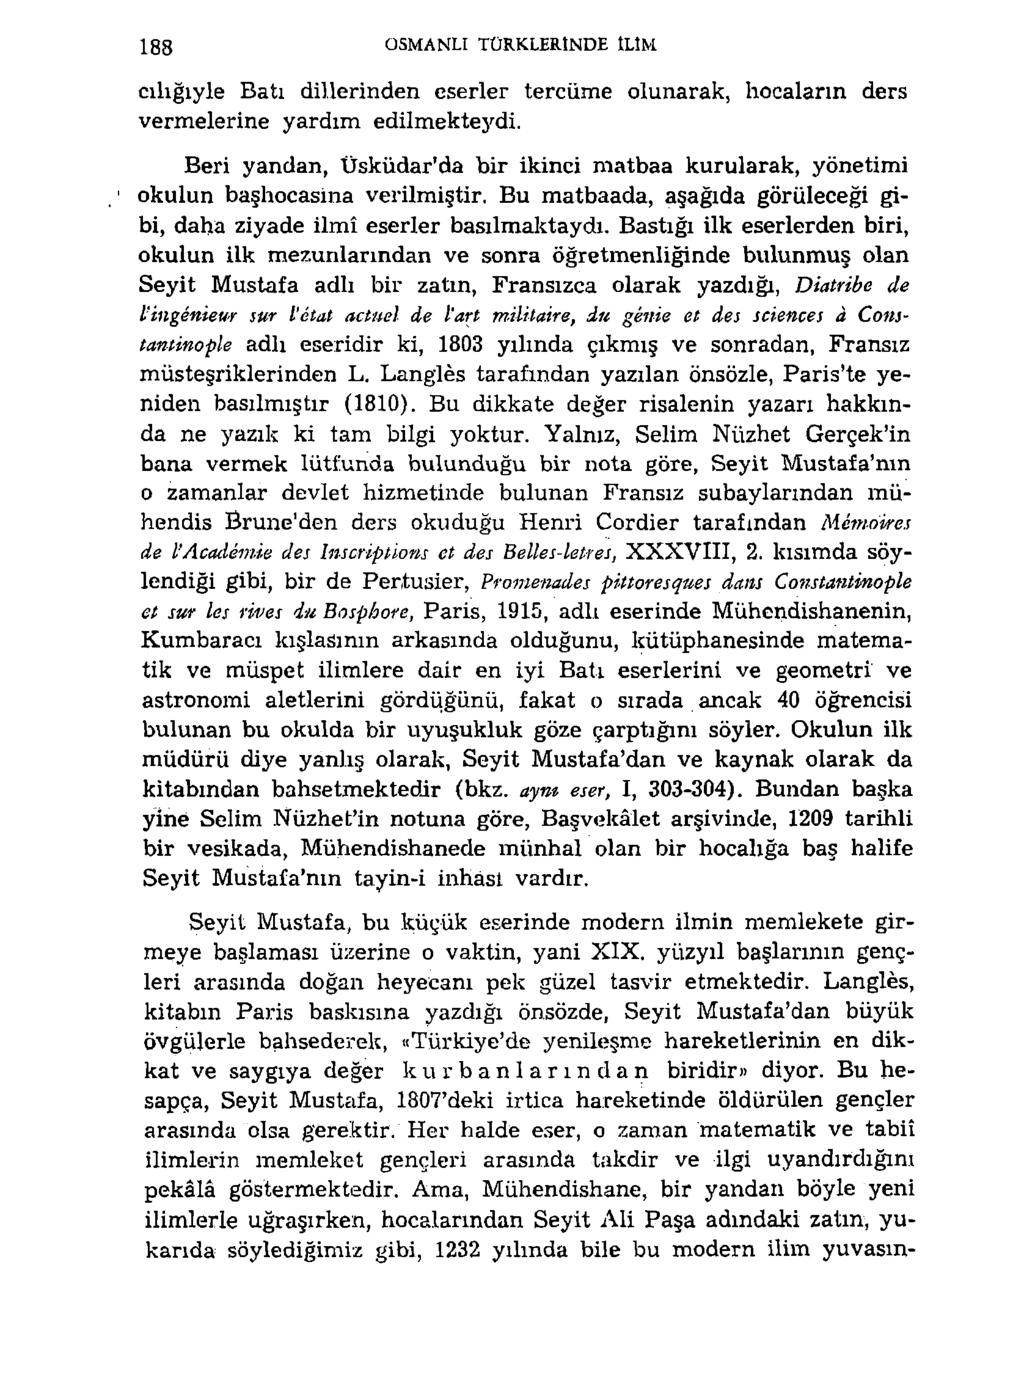 188 OSMANLI TÜRKLERINDE ILIM cılığıyle Batı dillerinden eserler tercüme olunarak, hocaların ders vermelerine yardım edilmekteydi.